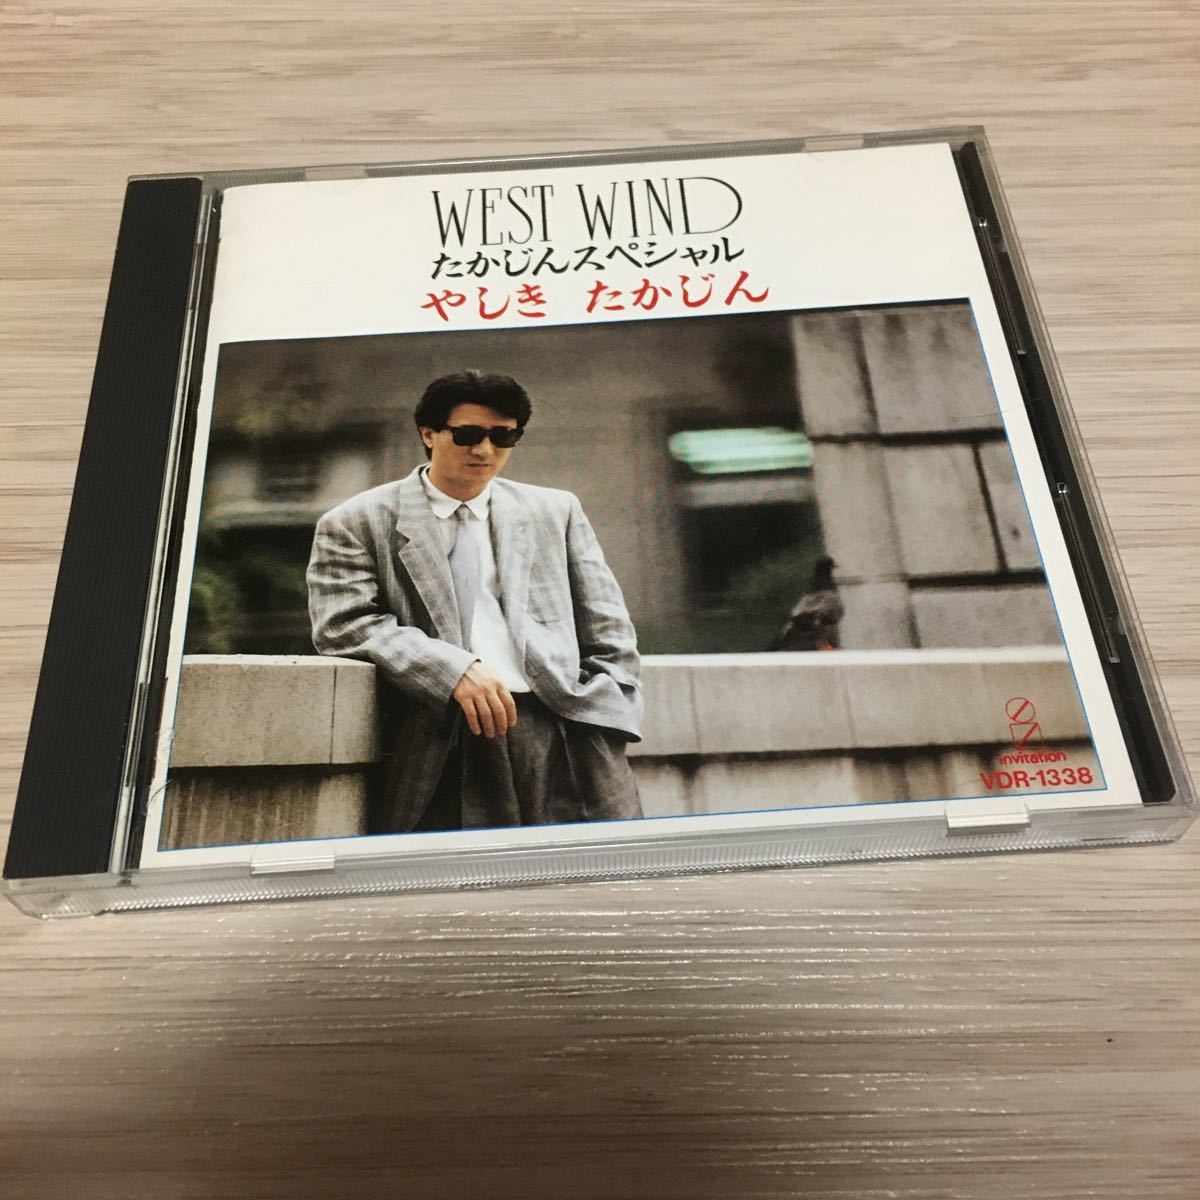 音楽CD やしきたかじん ベスト・アルバム WEST WIND たかじんスペシャル 1986年 廃盤 VDR-1338 やっぱ好きやねん など10曲収録_画像1